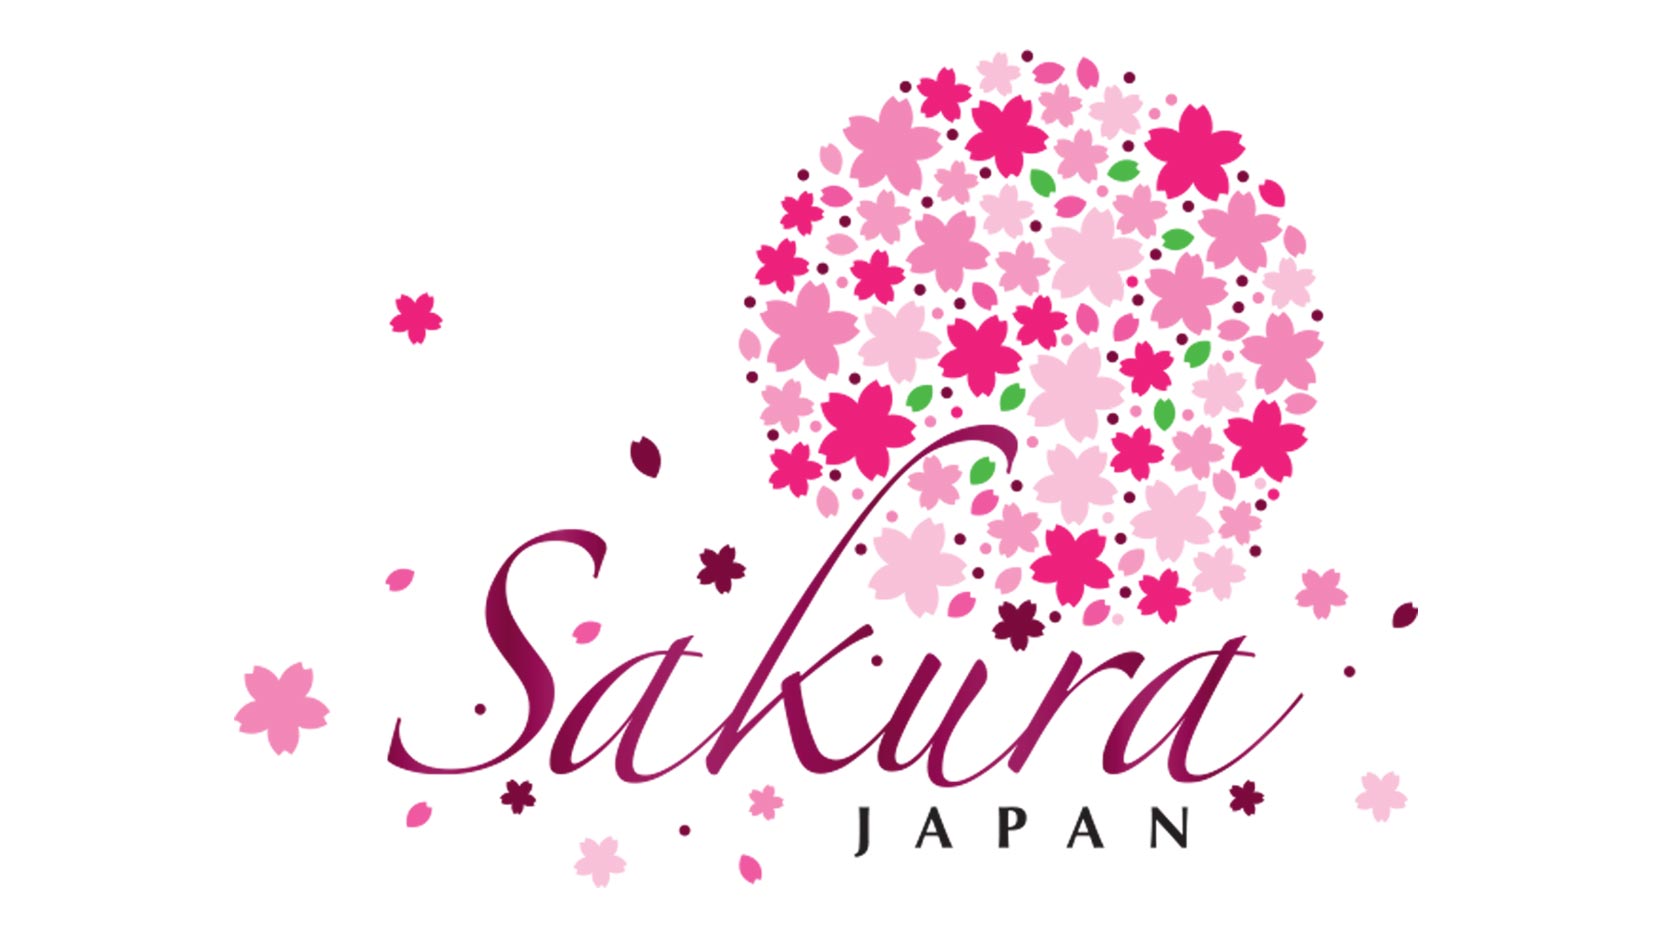 Sakura Japan Fair at Gardens by the Bay